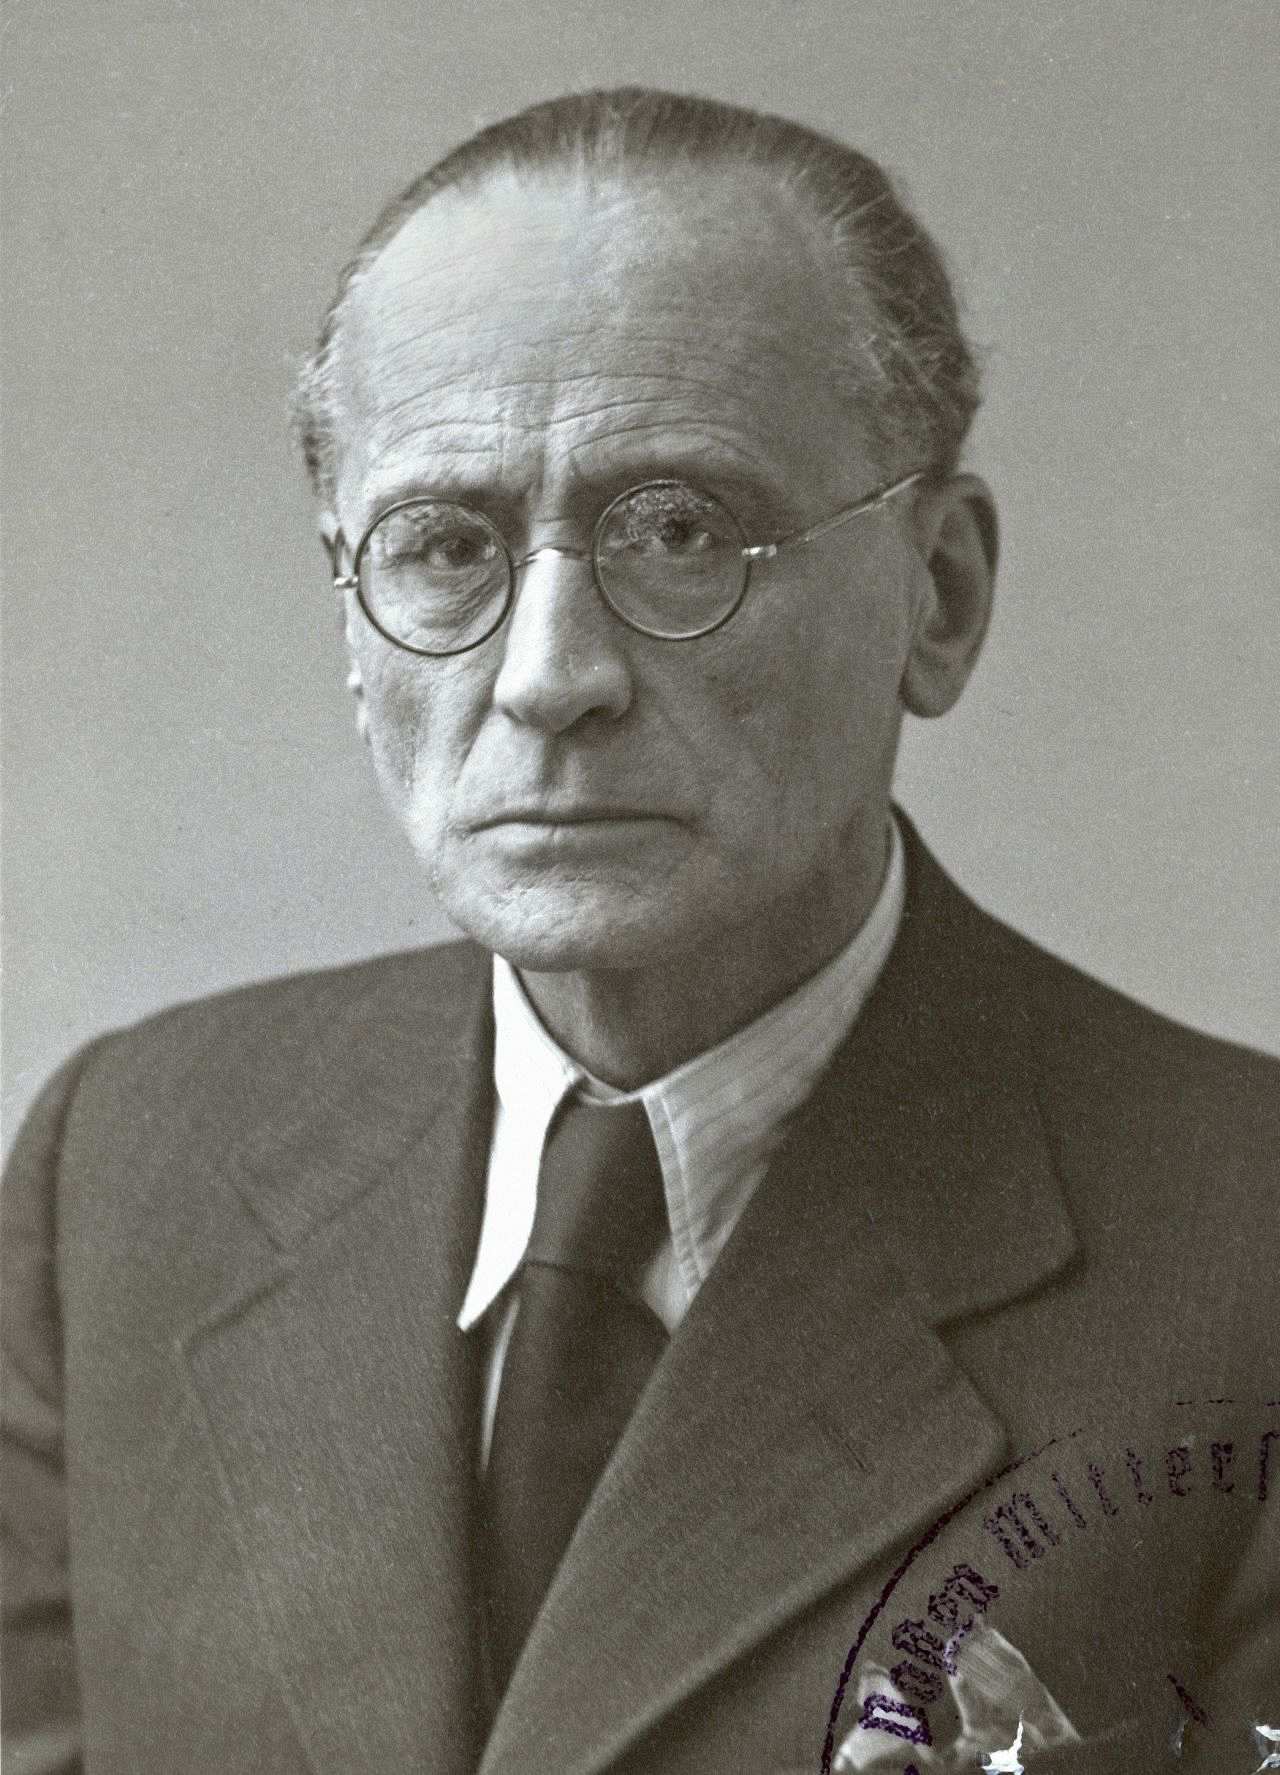 Porträtfotografie des österreichischen Komponisten Anton von Webern, 1945.